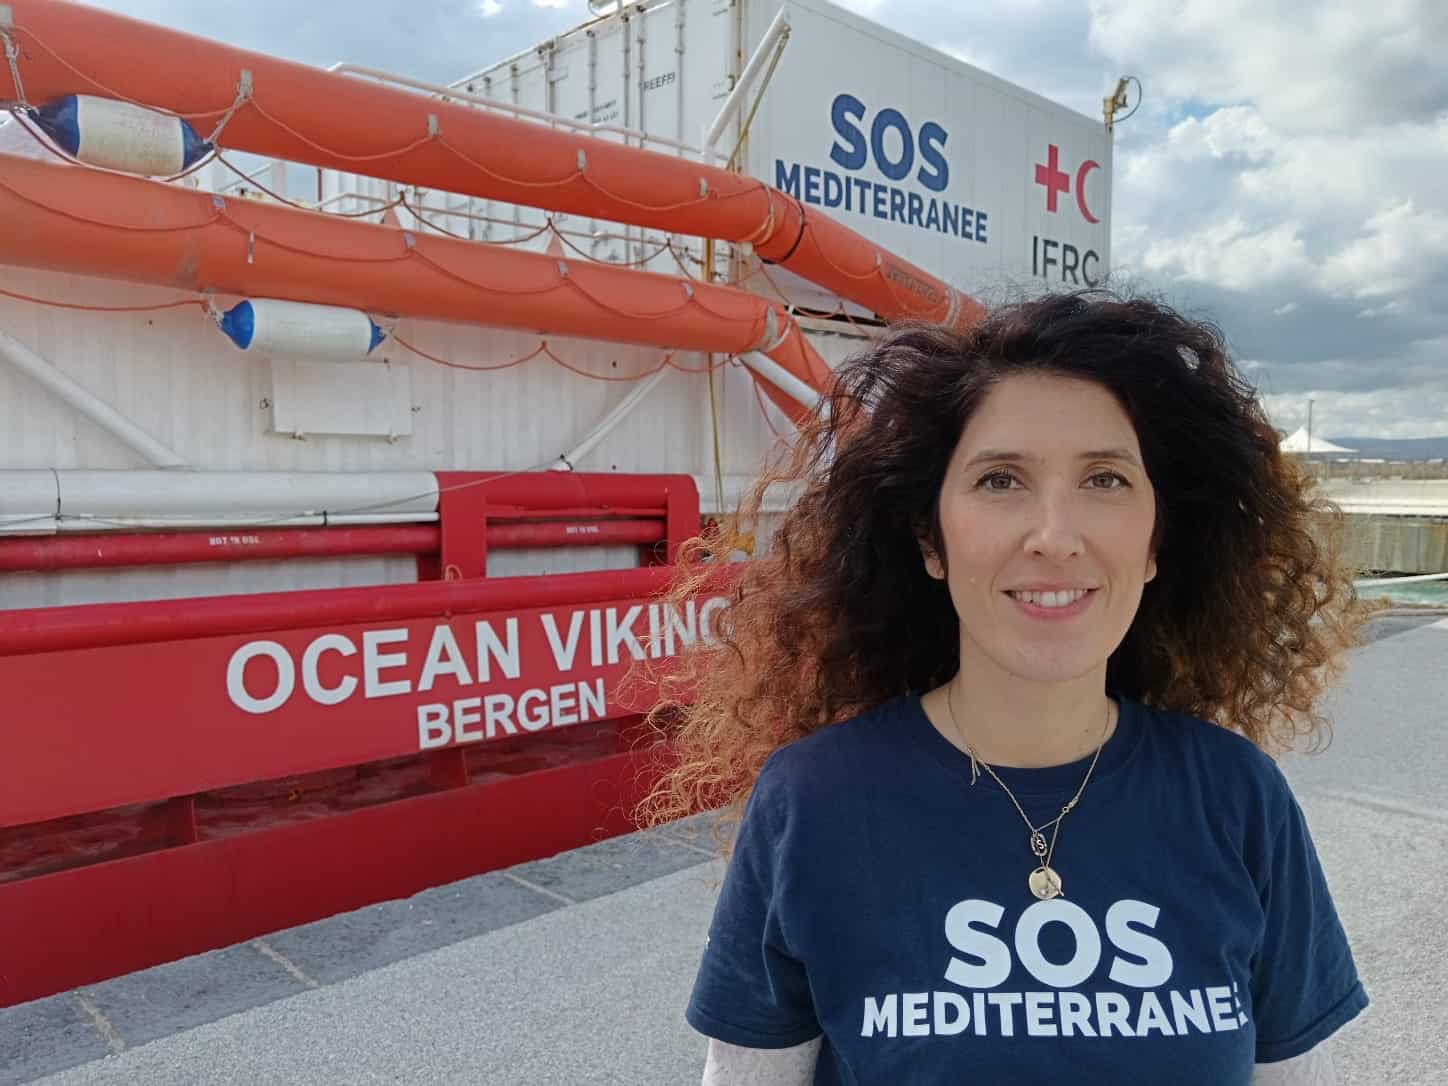 SOS MEDITERRANEE presenta una petizione rivolta a tutte le cittadine e i cittadini per dire basta alle politiche di morte nel Mediterraneo Centrale